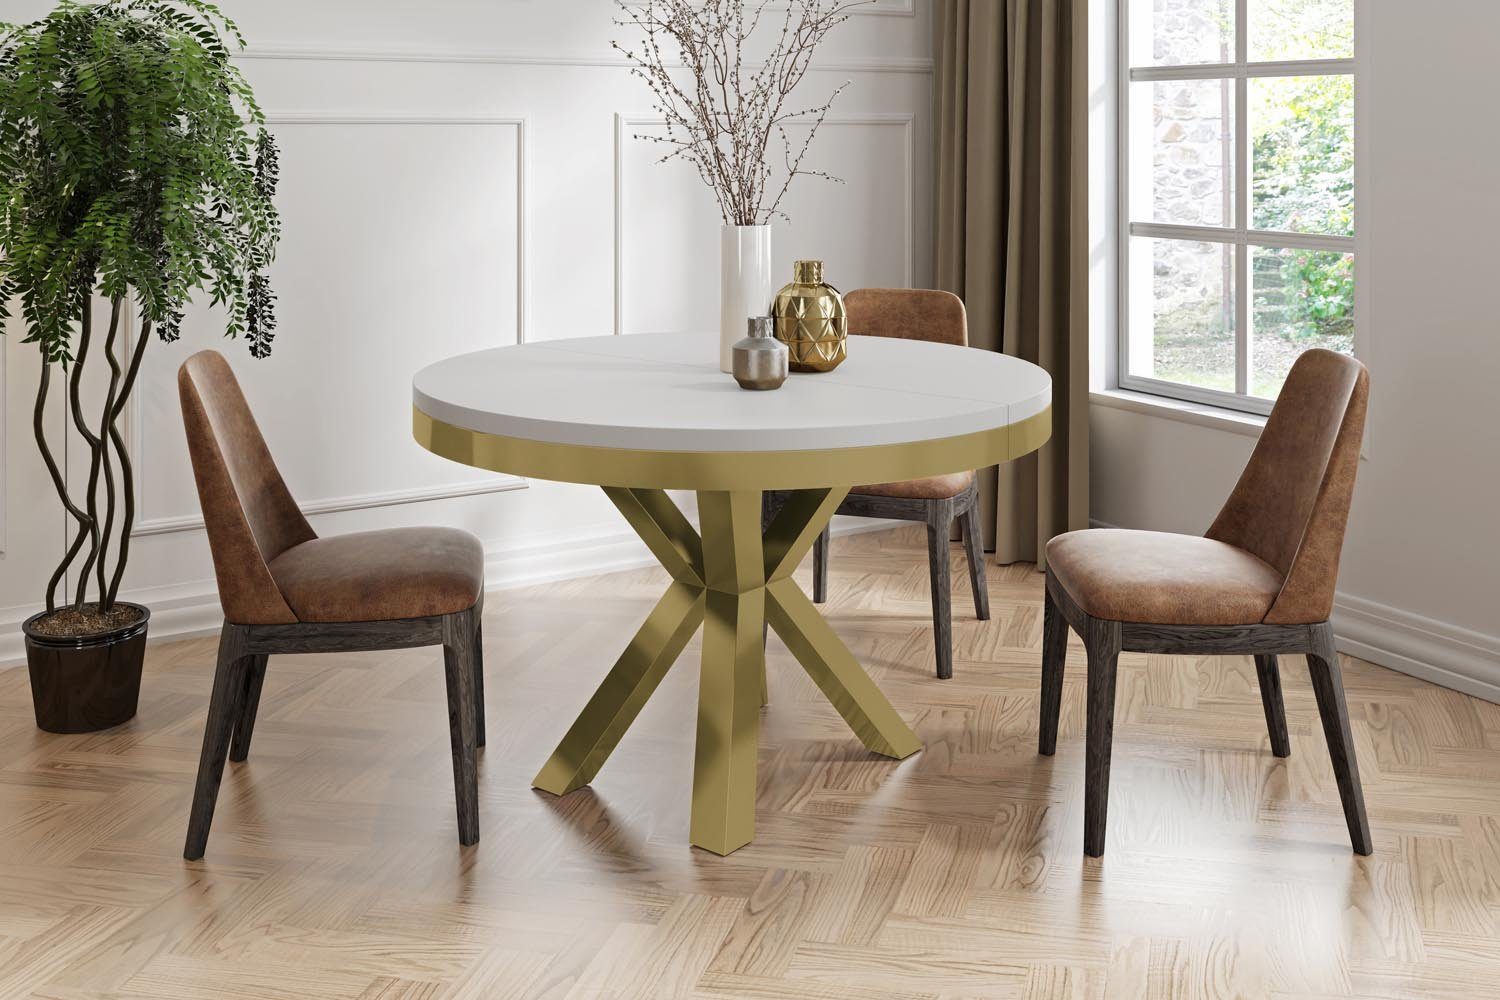 Clara WFL Ausziehbar mit Metallbeinen Weiß GROUP Loft-Stil Tisch im Esstisch Gold,